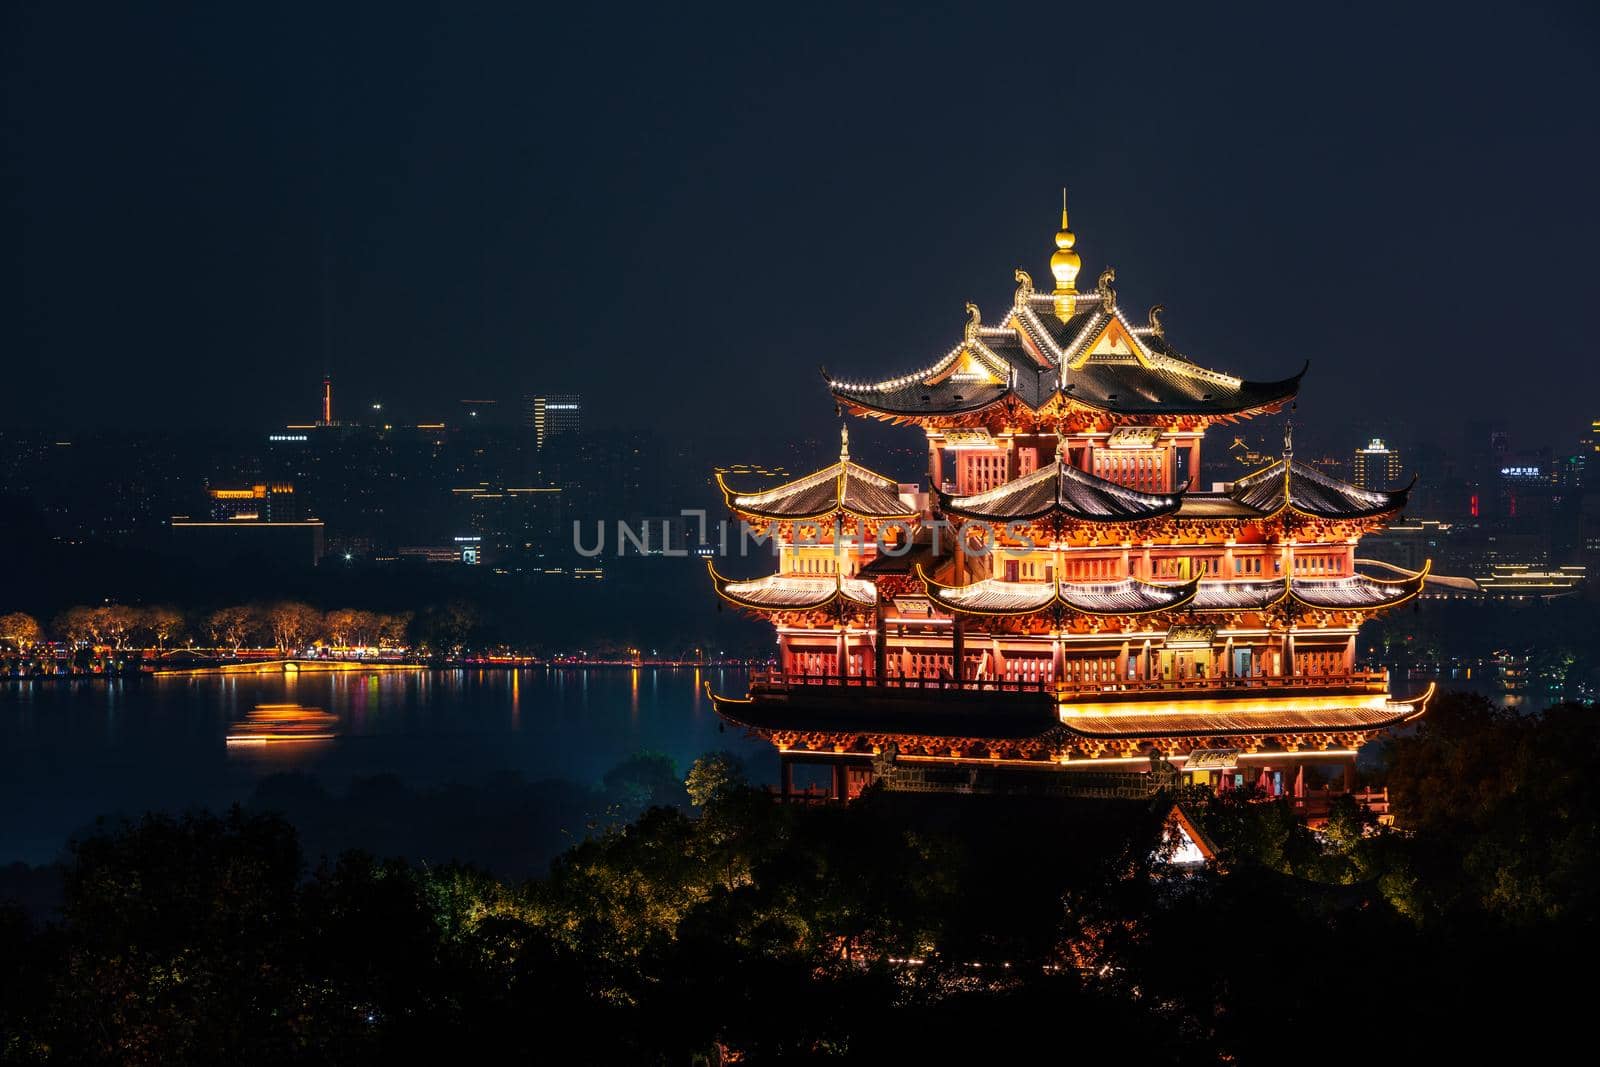 Night view of illuminated Cheng Huang Ge, also known as City God Pavillion, Hangzhou, China by zhu_zhu